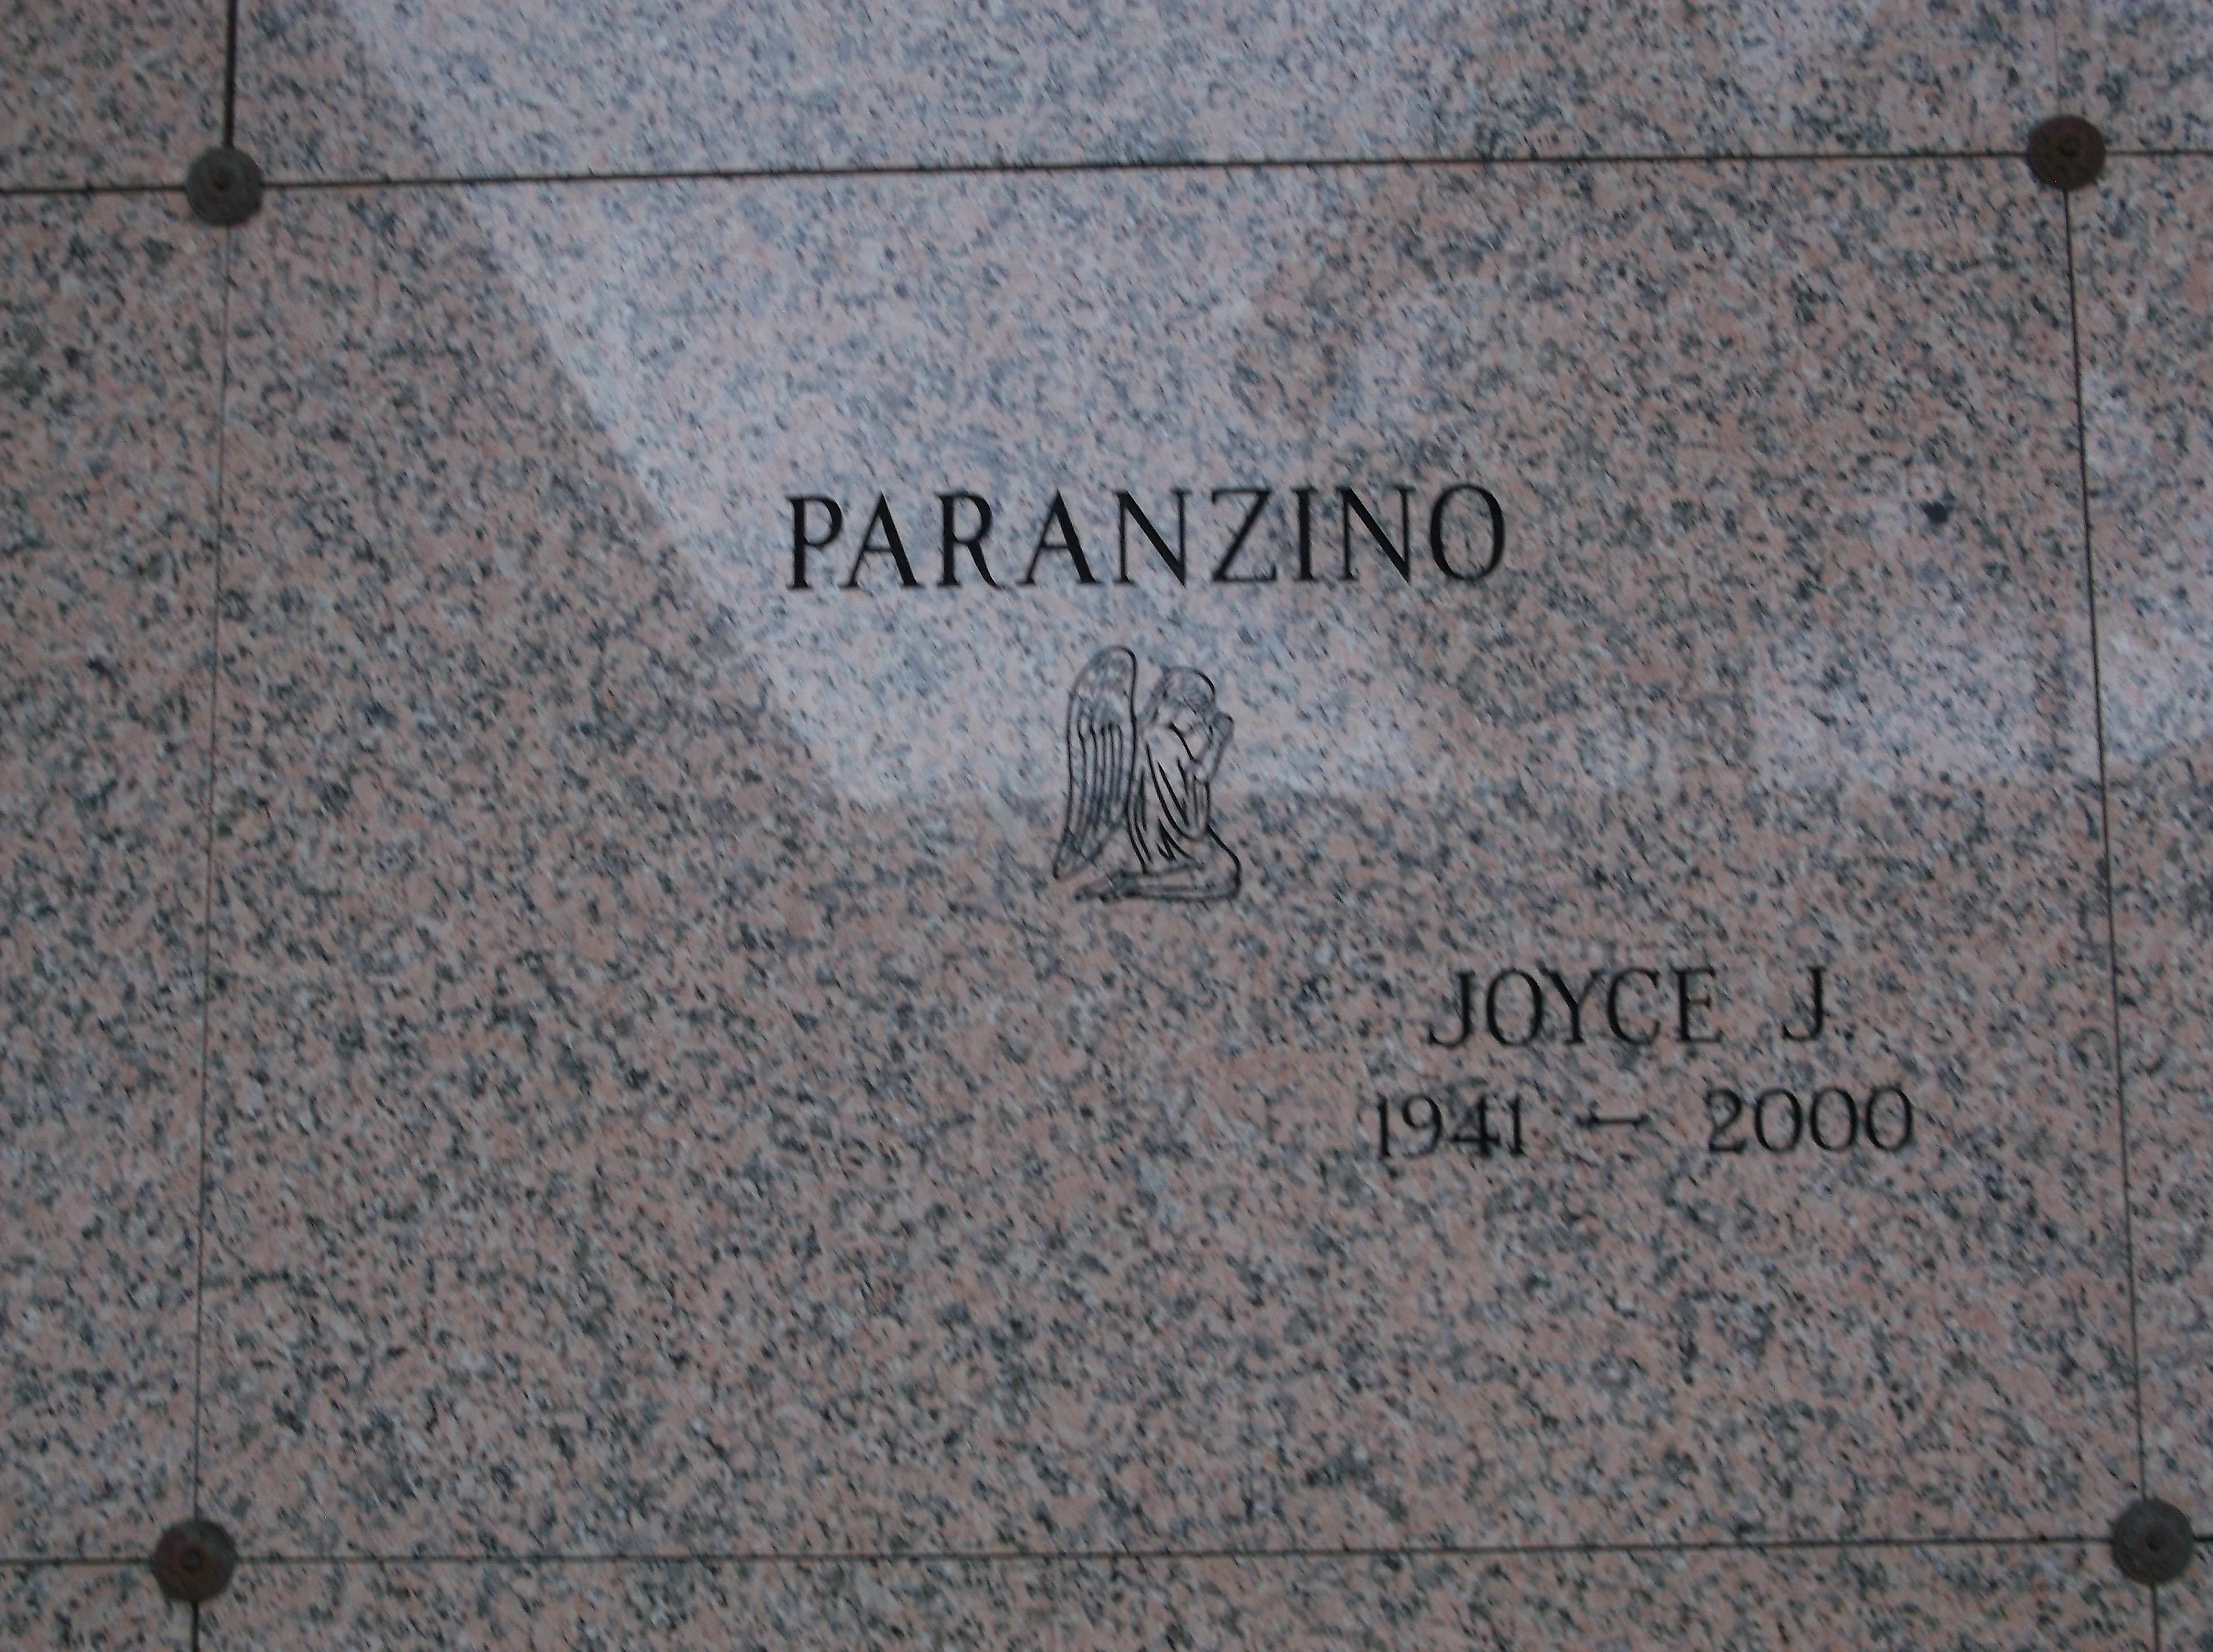 Joyce J Paranzino